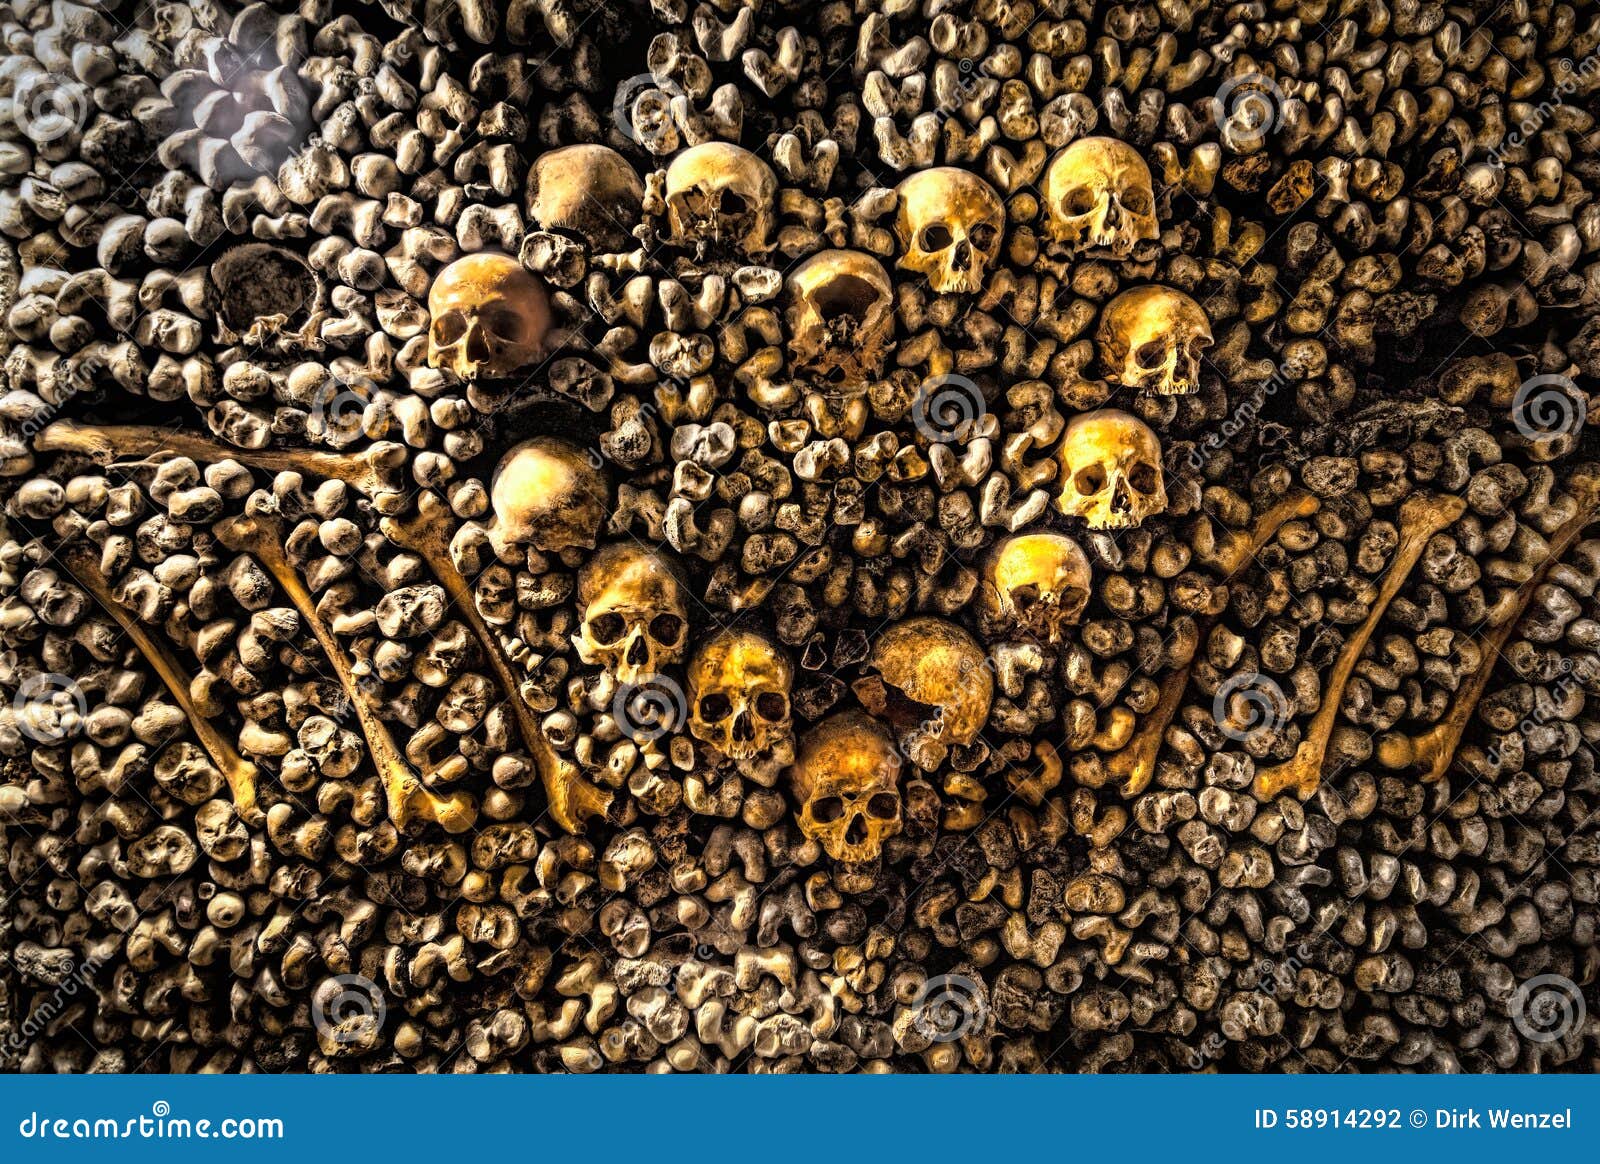 paris-catacombs-dead-1